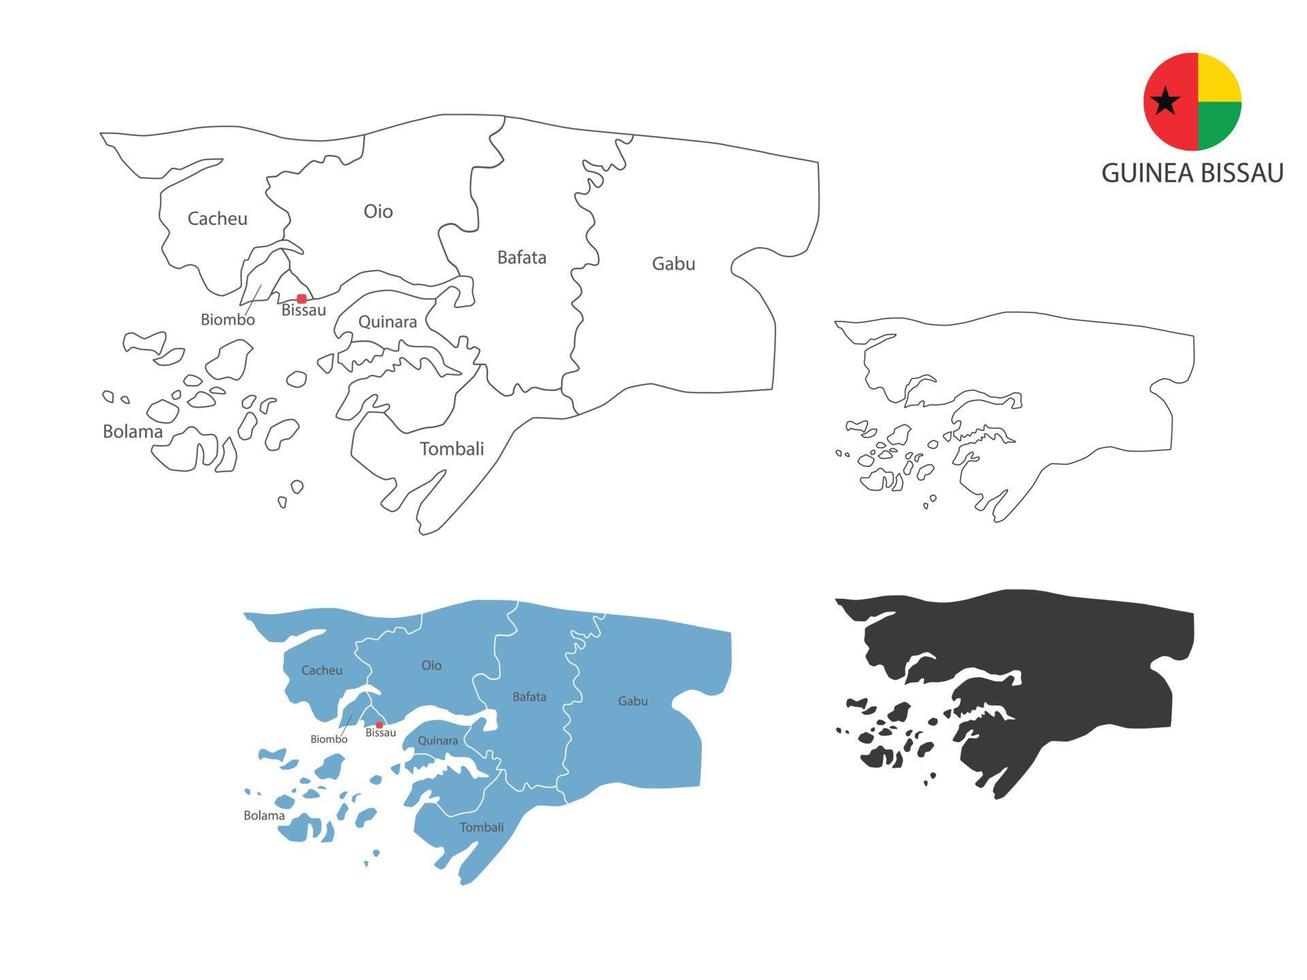 4 estilo de guinea bissau mapa ilustración vectorial tiene toda la provincia y marca la ciudad capital de guinea bissau. por estilo de simplicidad de contorno negro delgado y estilo de sombra oscura. vector